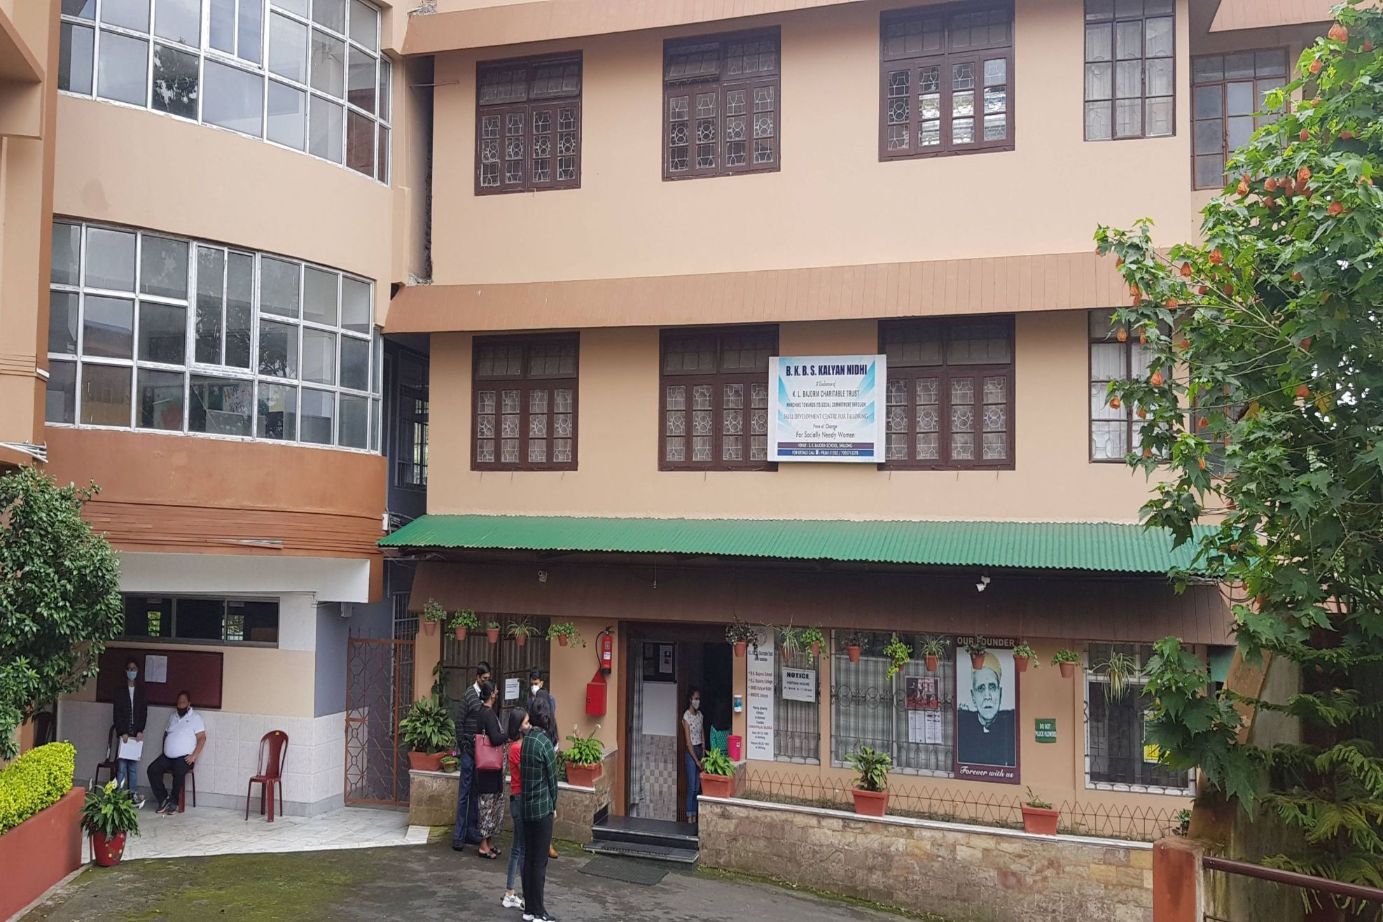 B K Bajoria School, Shillong